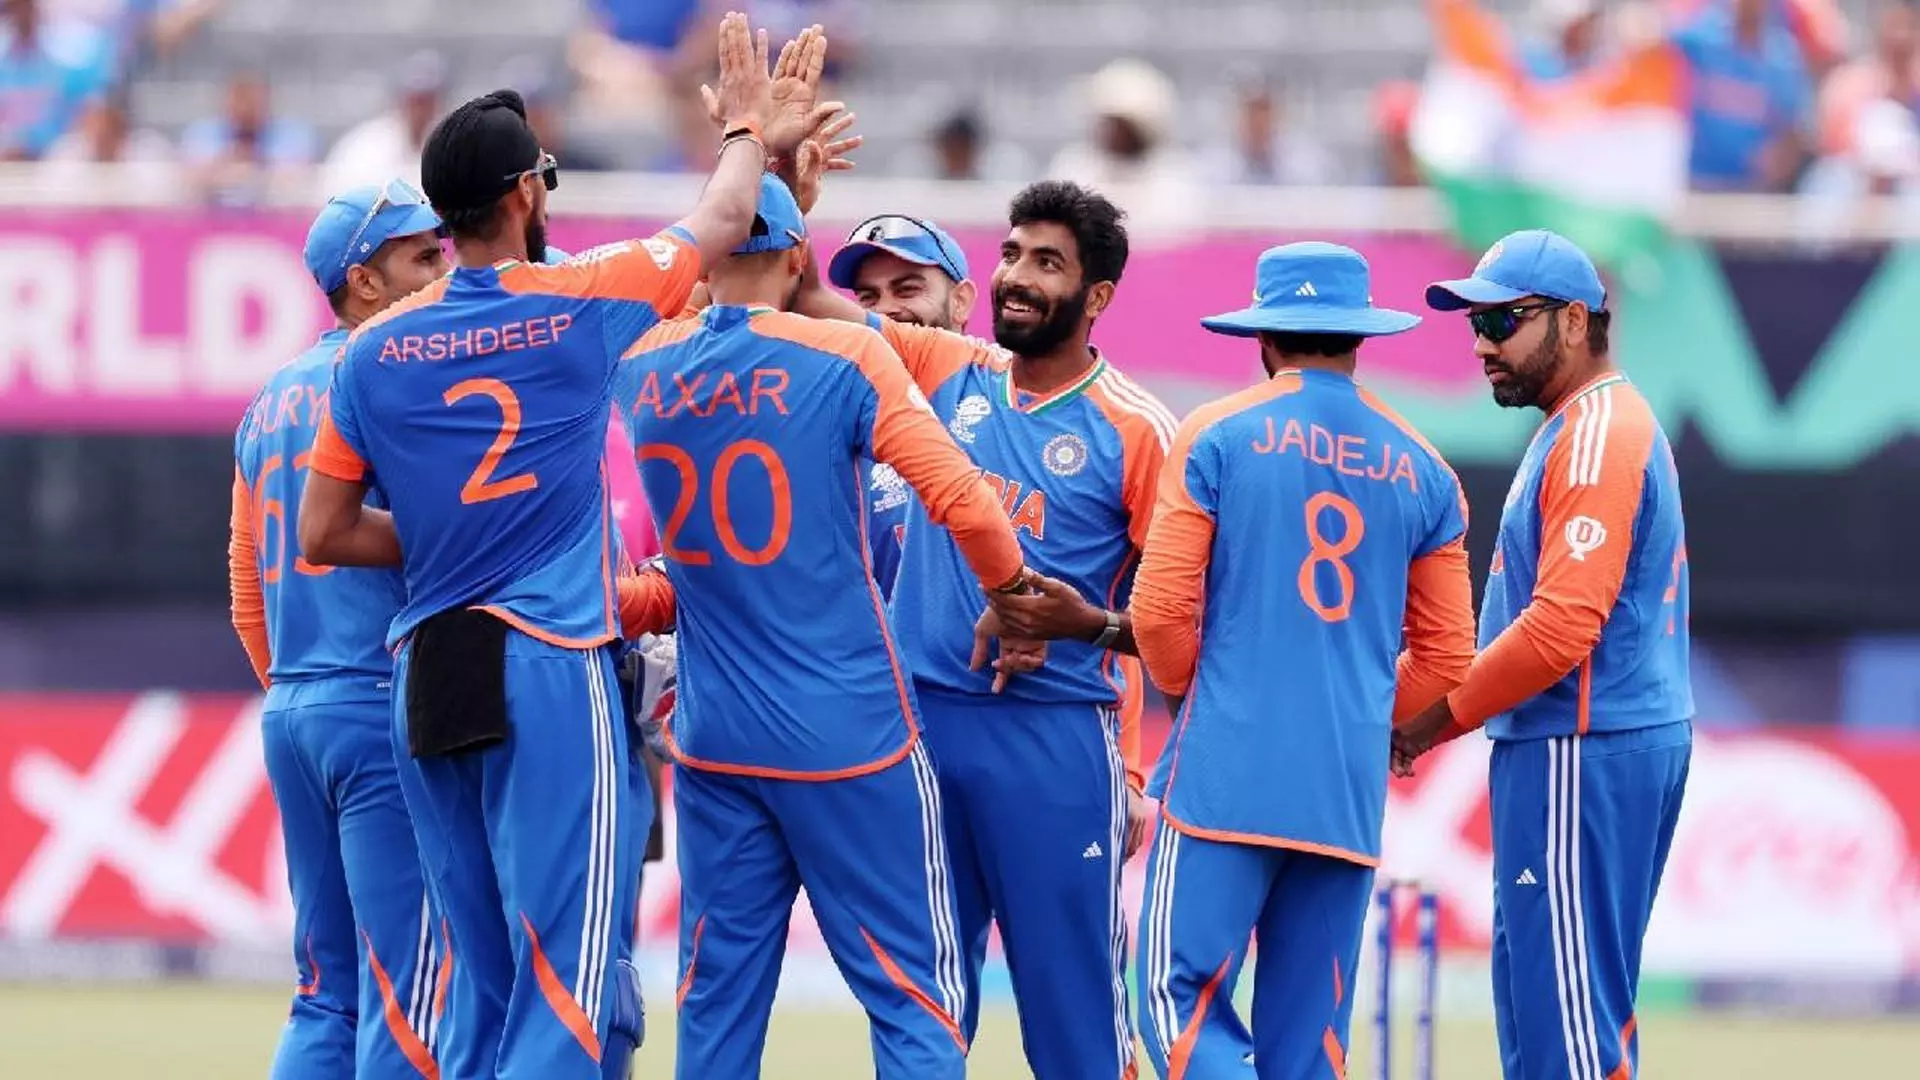 New York: अगर भारत टी20 विश्व कप जीतता है तो बुमराह की अहम भूमिका होगी, कुंबले